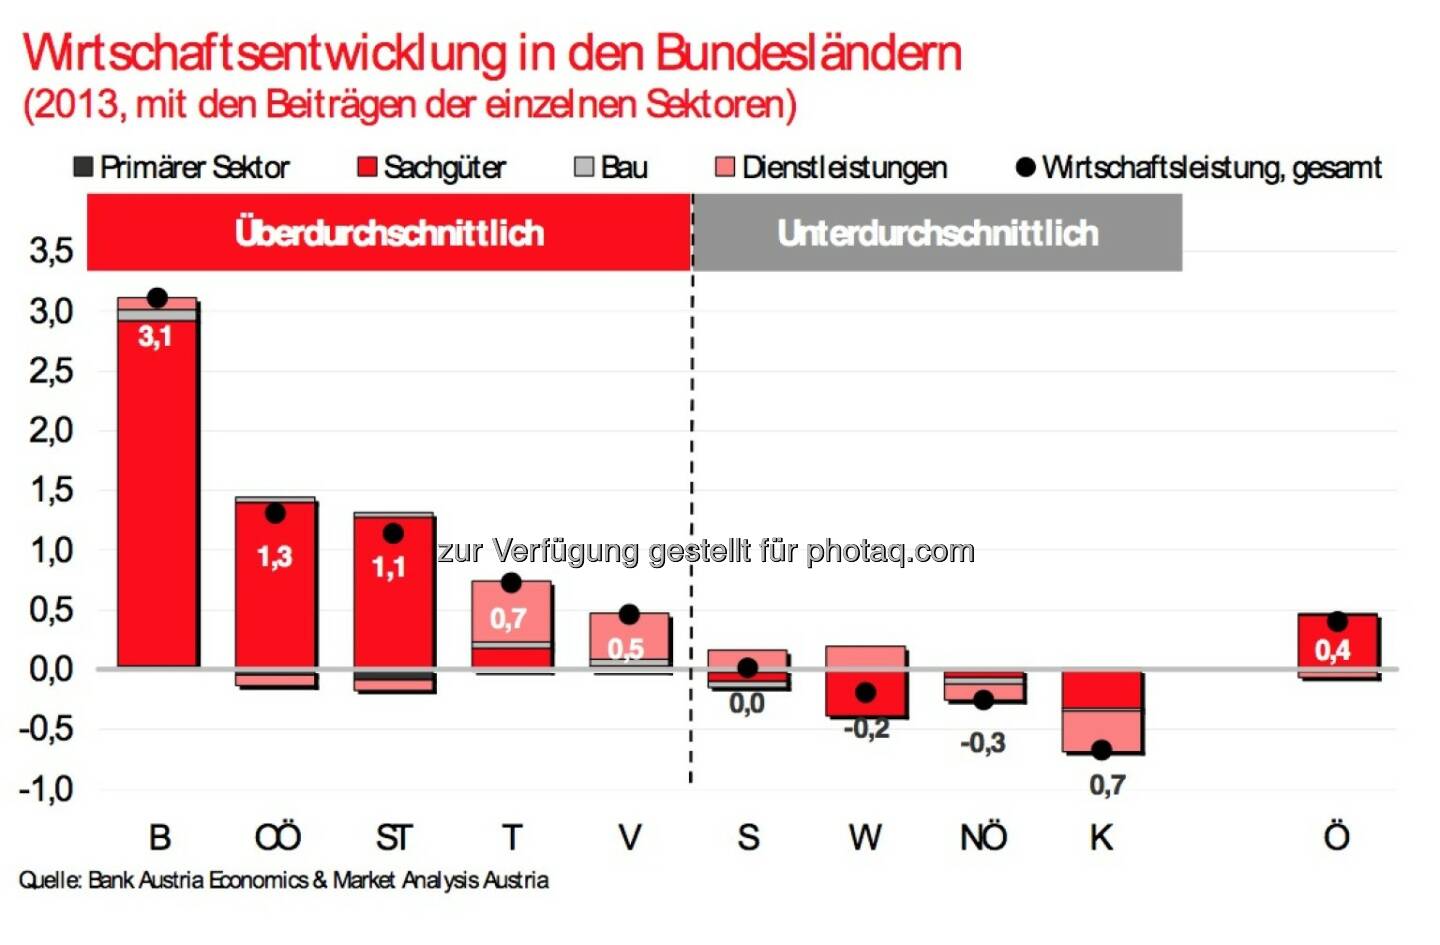 Bank Austria: Wirtschaftsentwicklung in den Bundesländern 2013